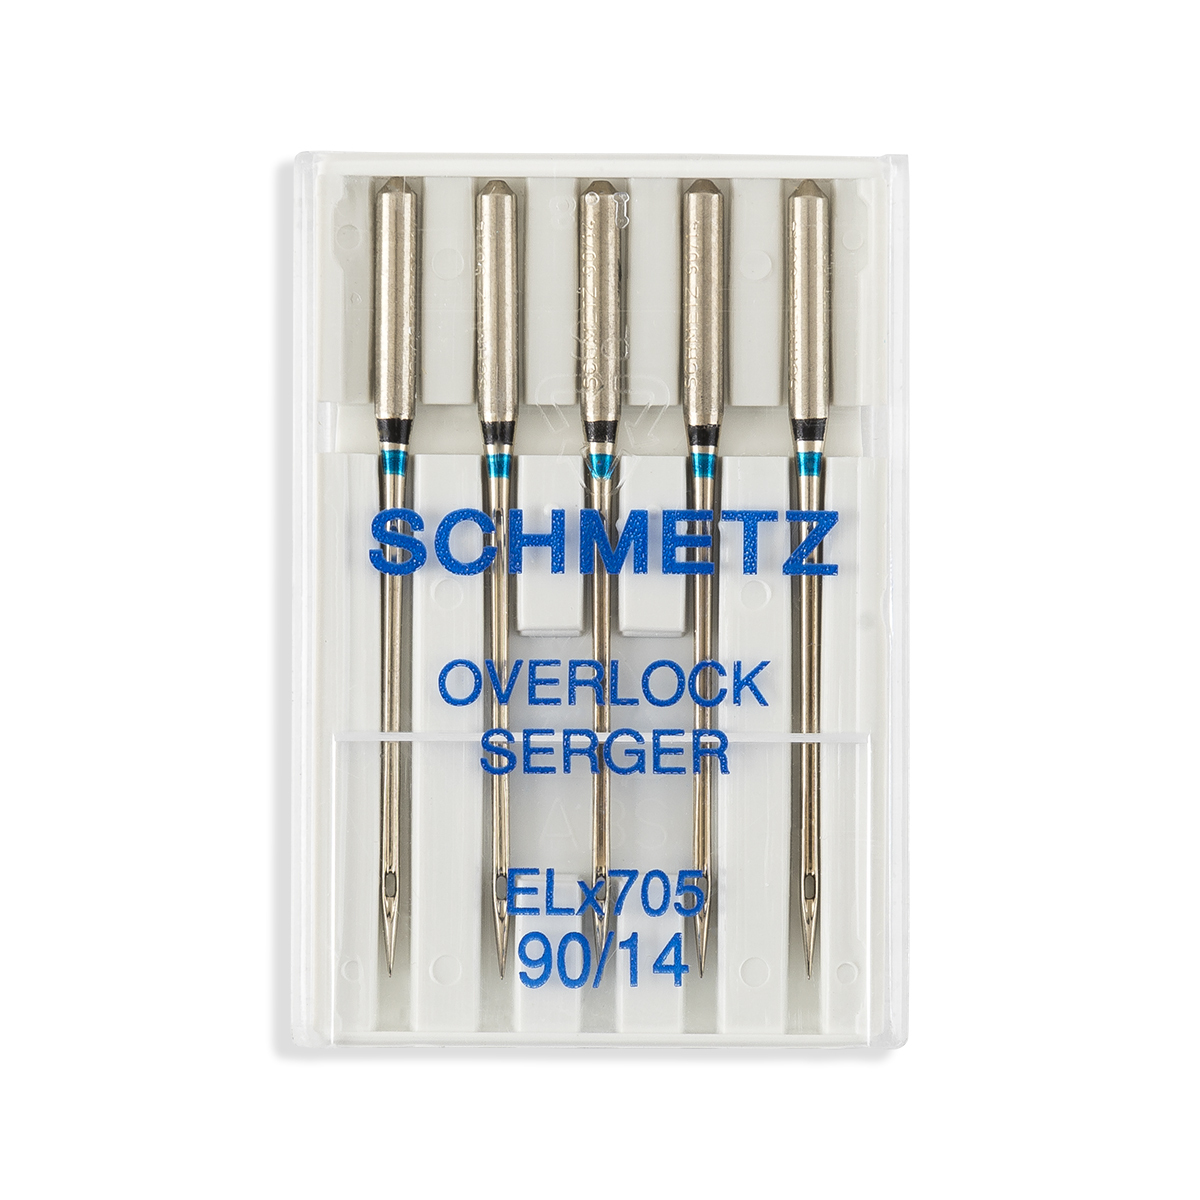 Schmetz Regular Point Serger Overlock Industrial Machine Needles